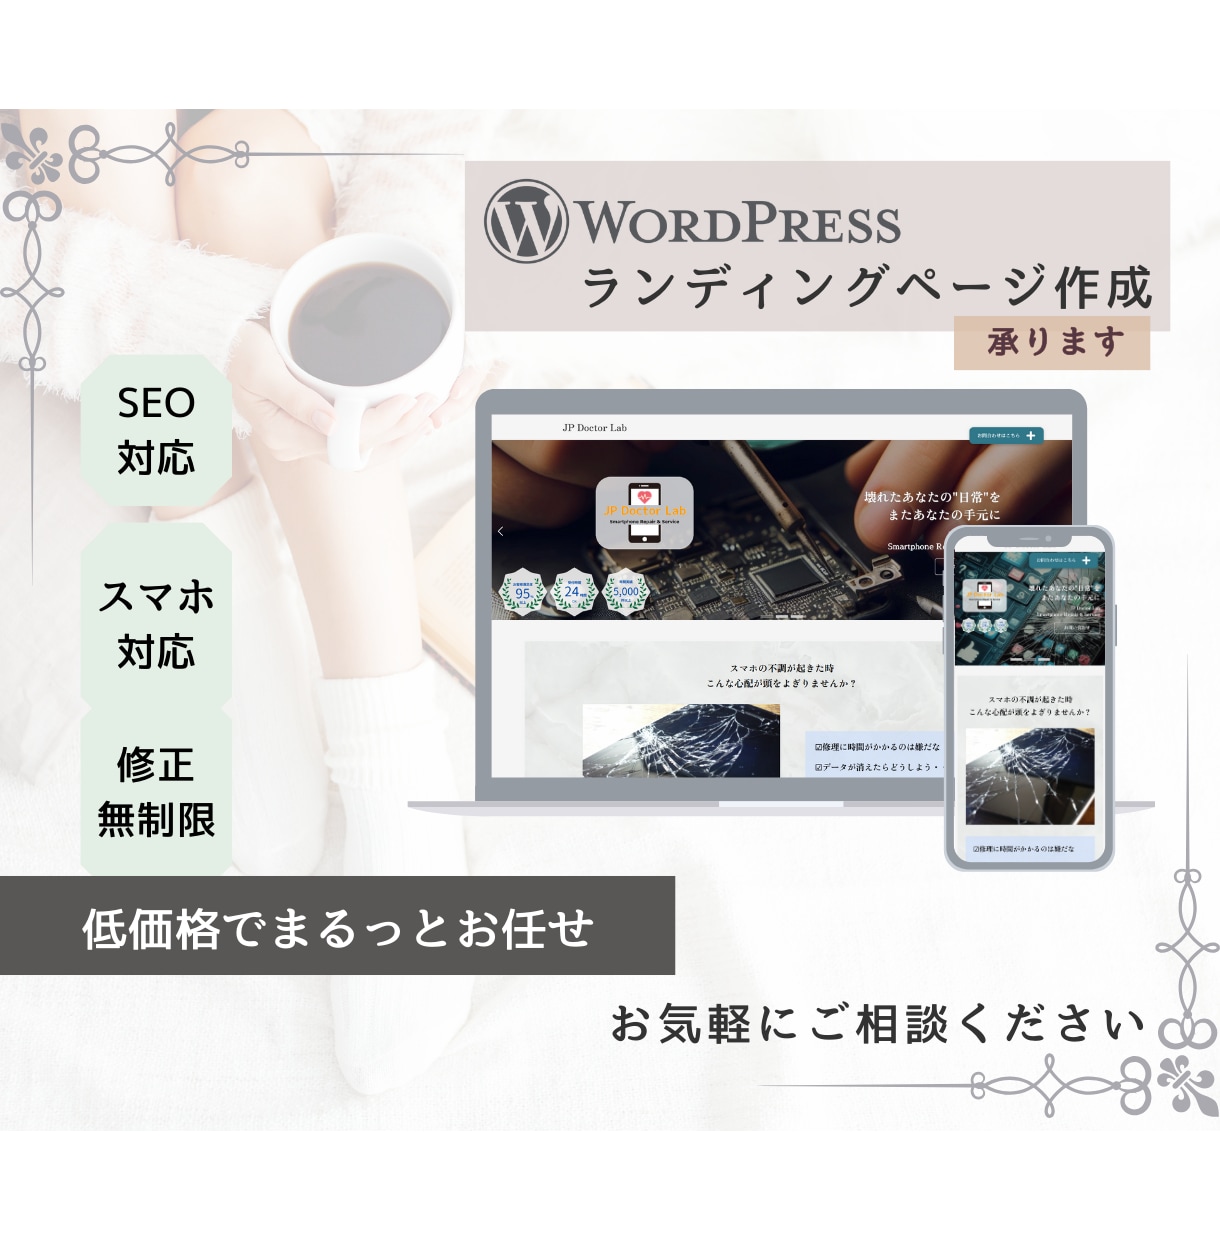 WordPressで低価格でLP制作承ります デザイン・スマホ対応・SEO対応まで低価格で イメージ1